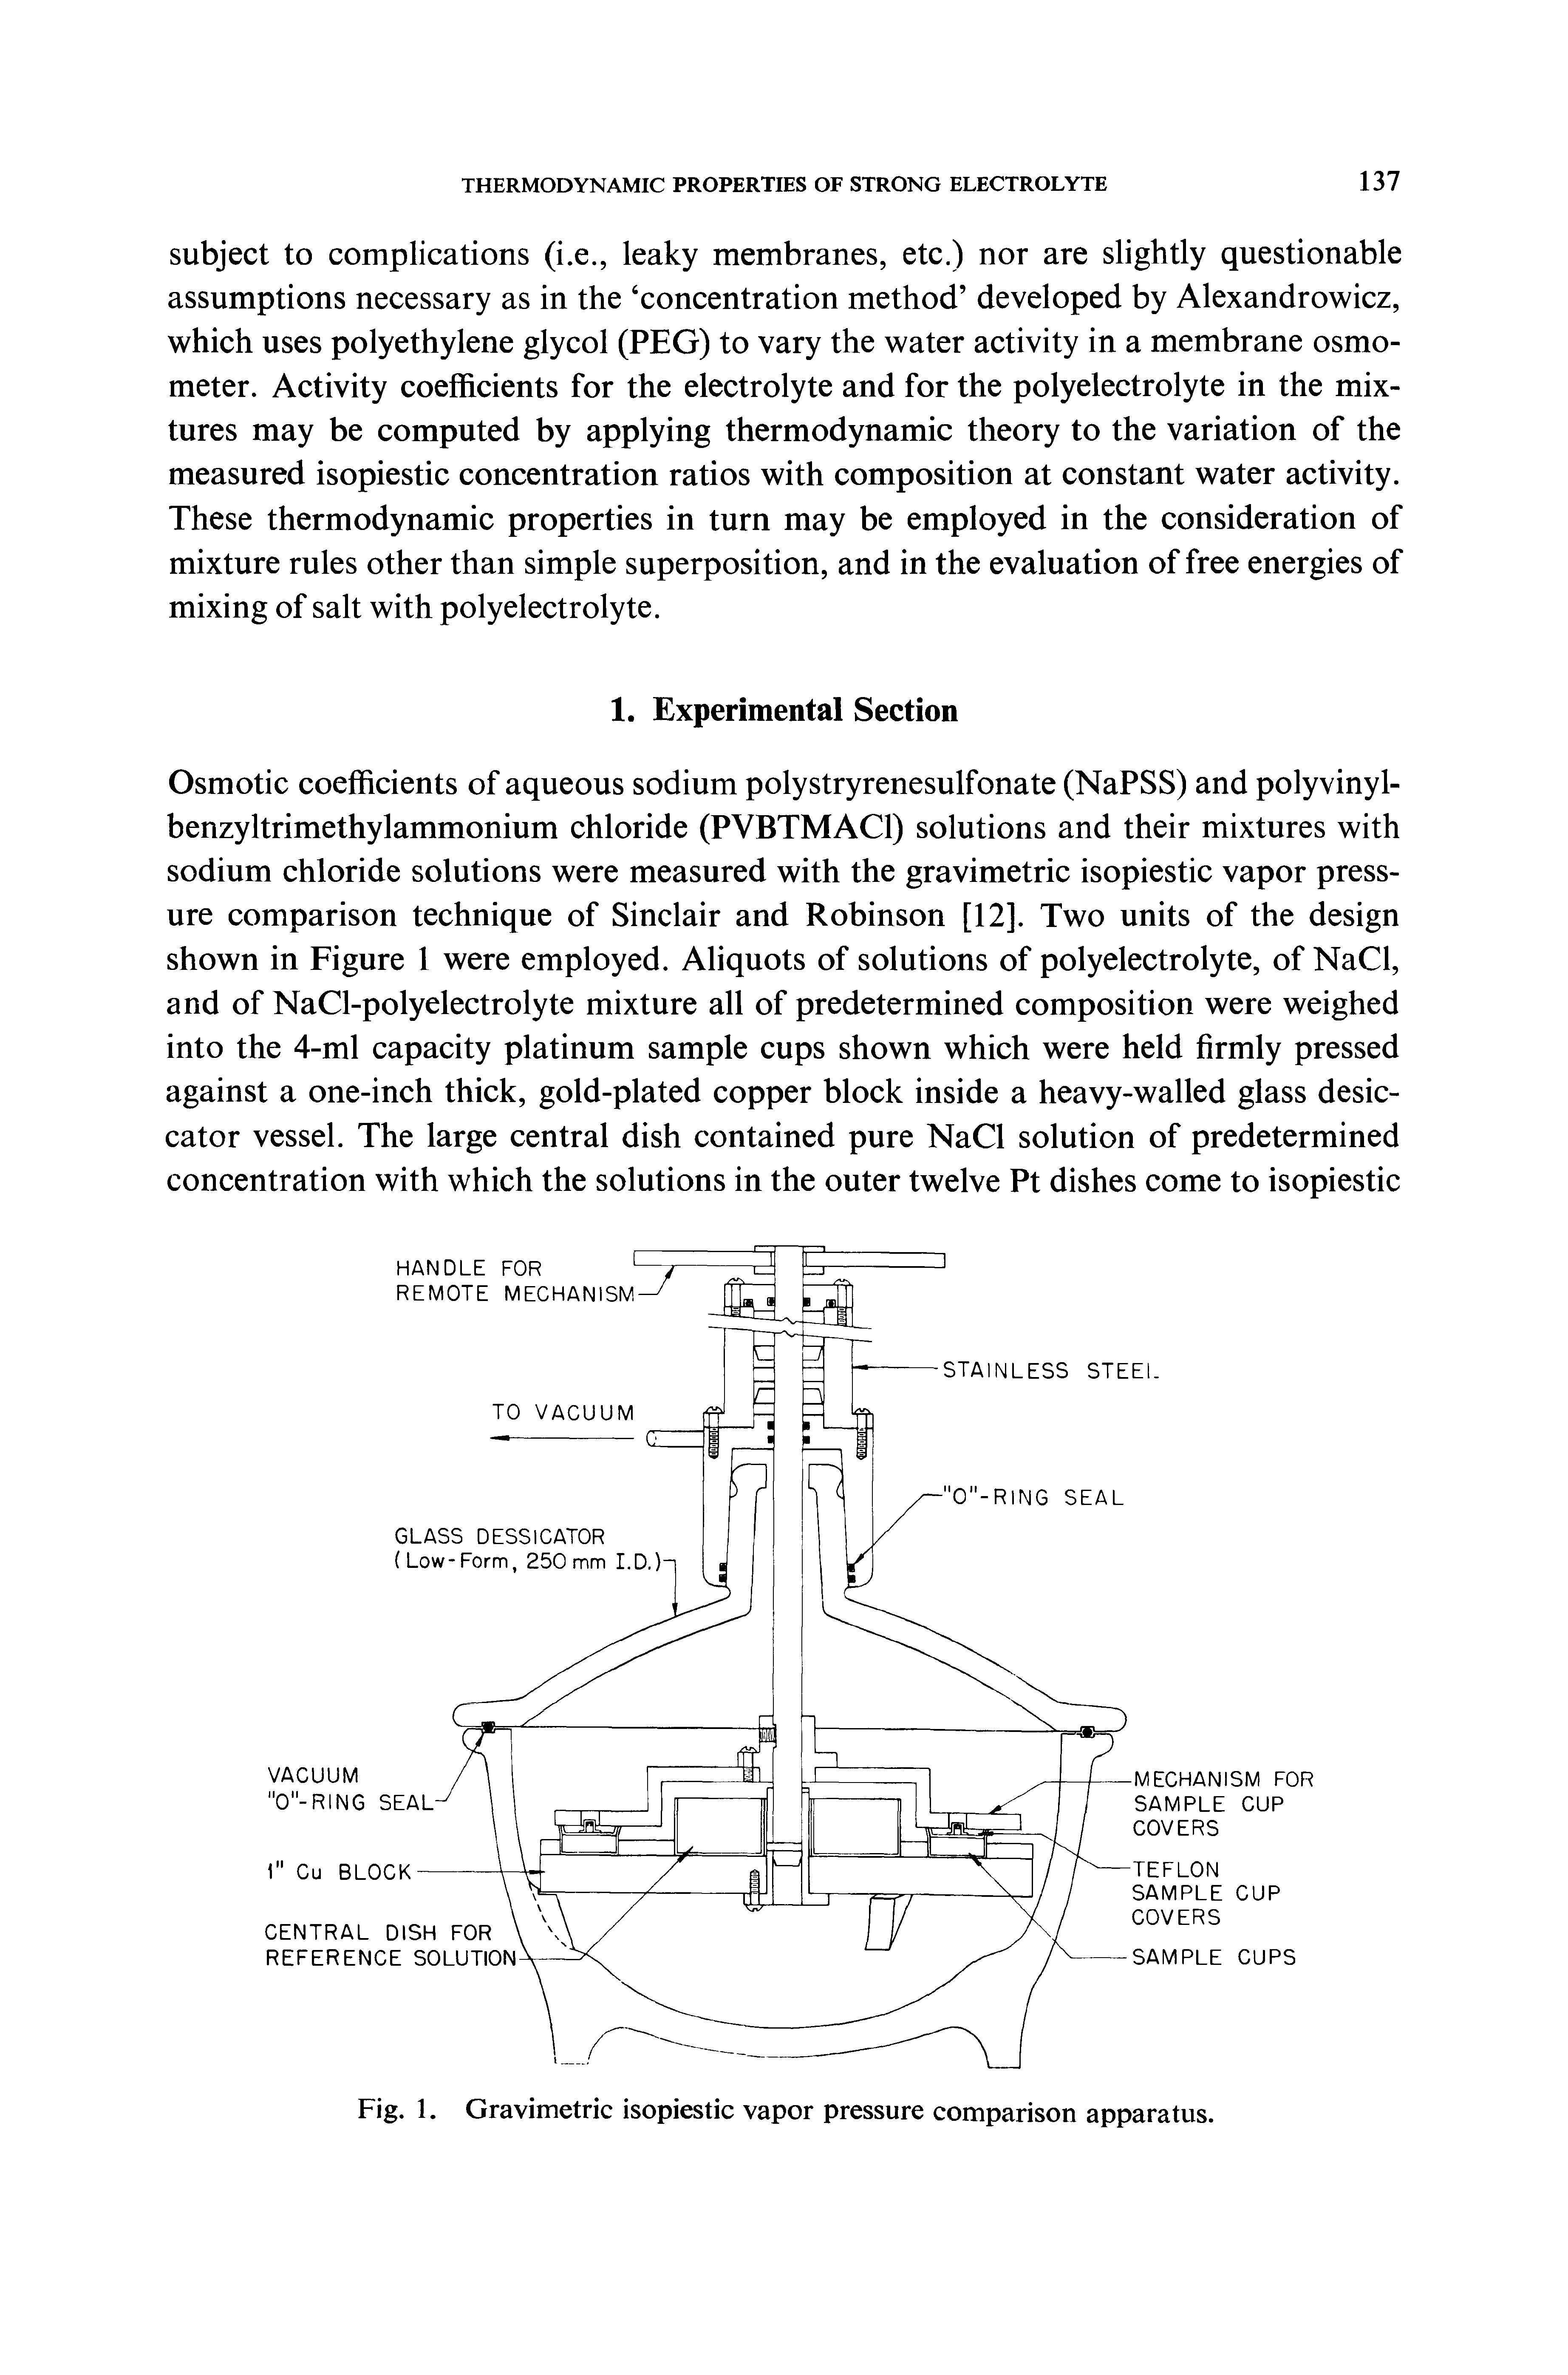 Fig. 1. Gravimetric isopiestic vapor pressure comparison apparatus.